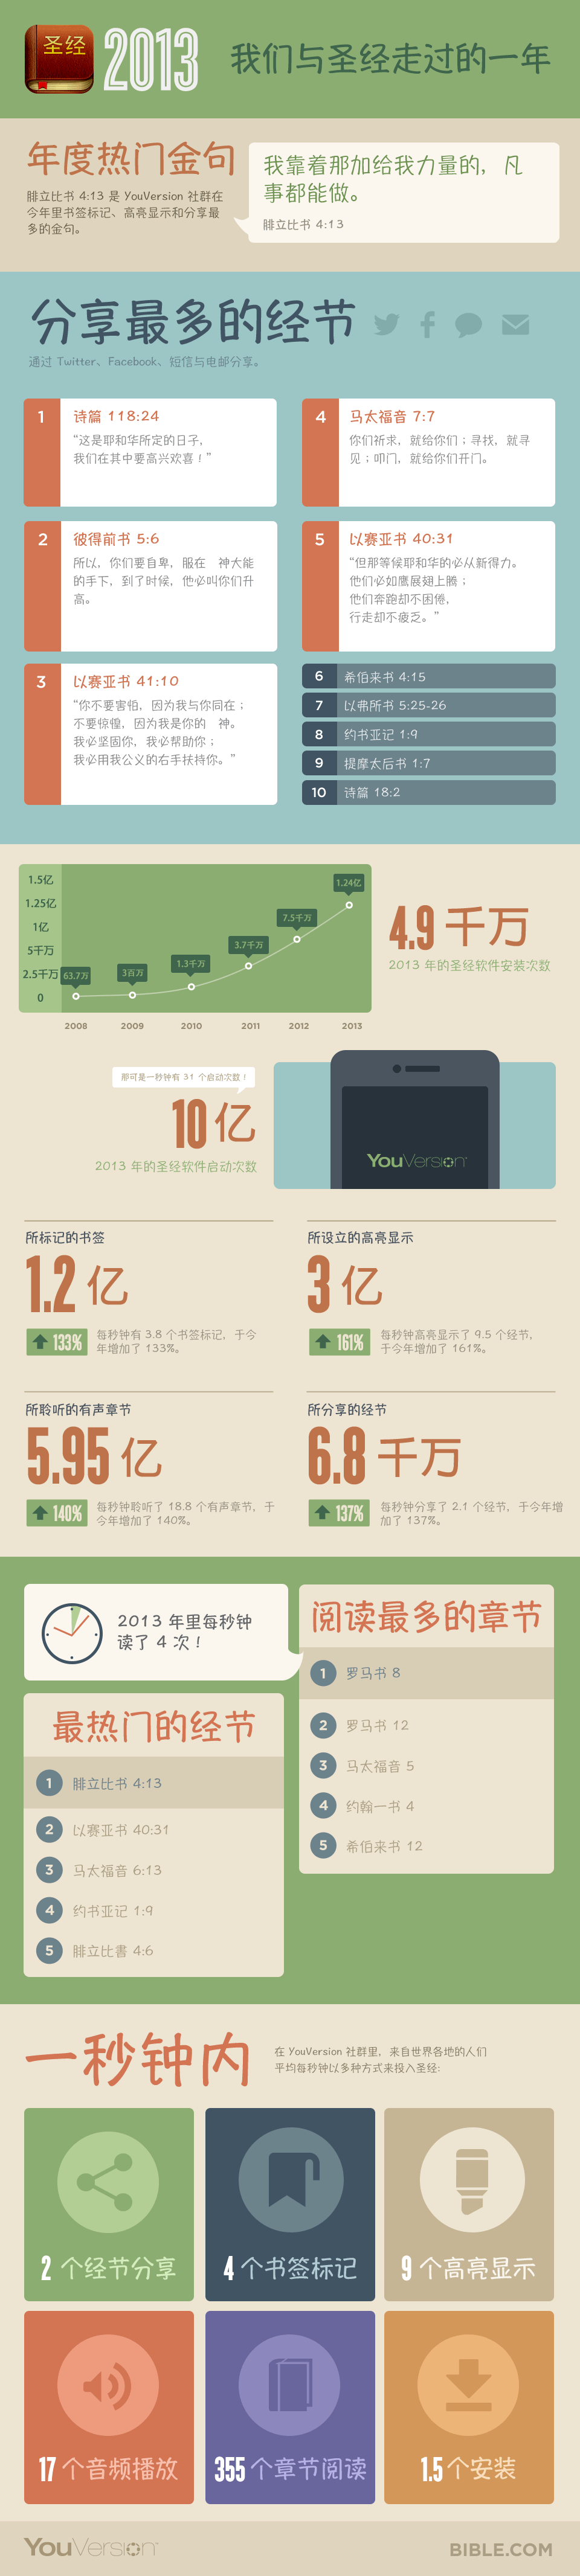 YV-Infographic-2013-CS